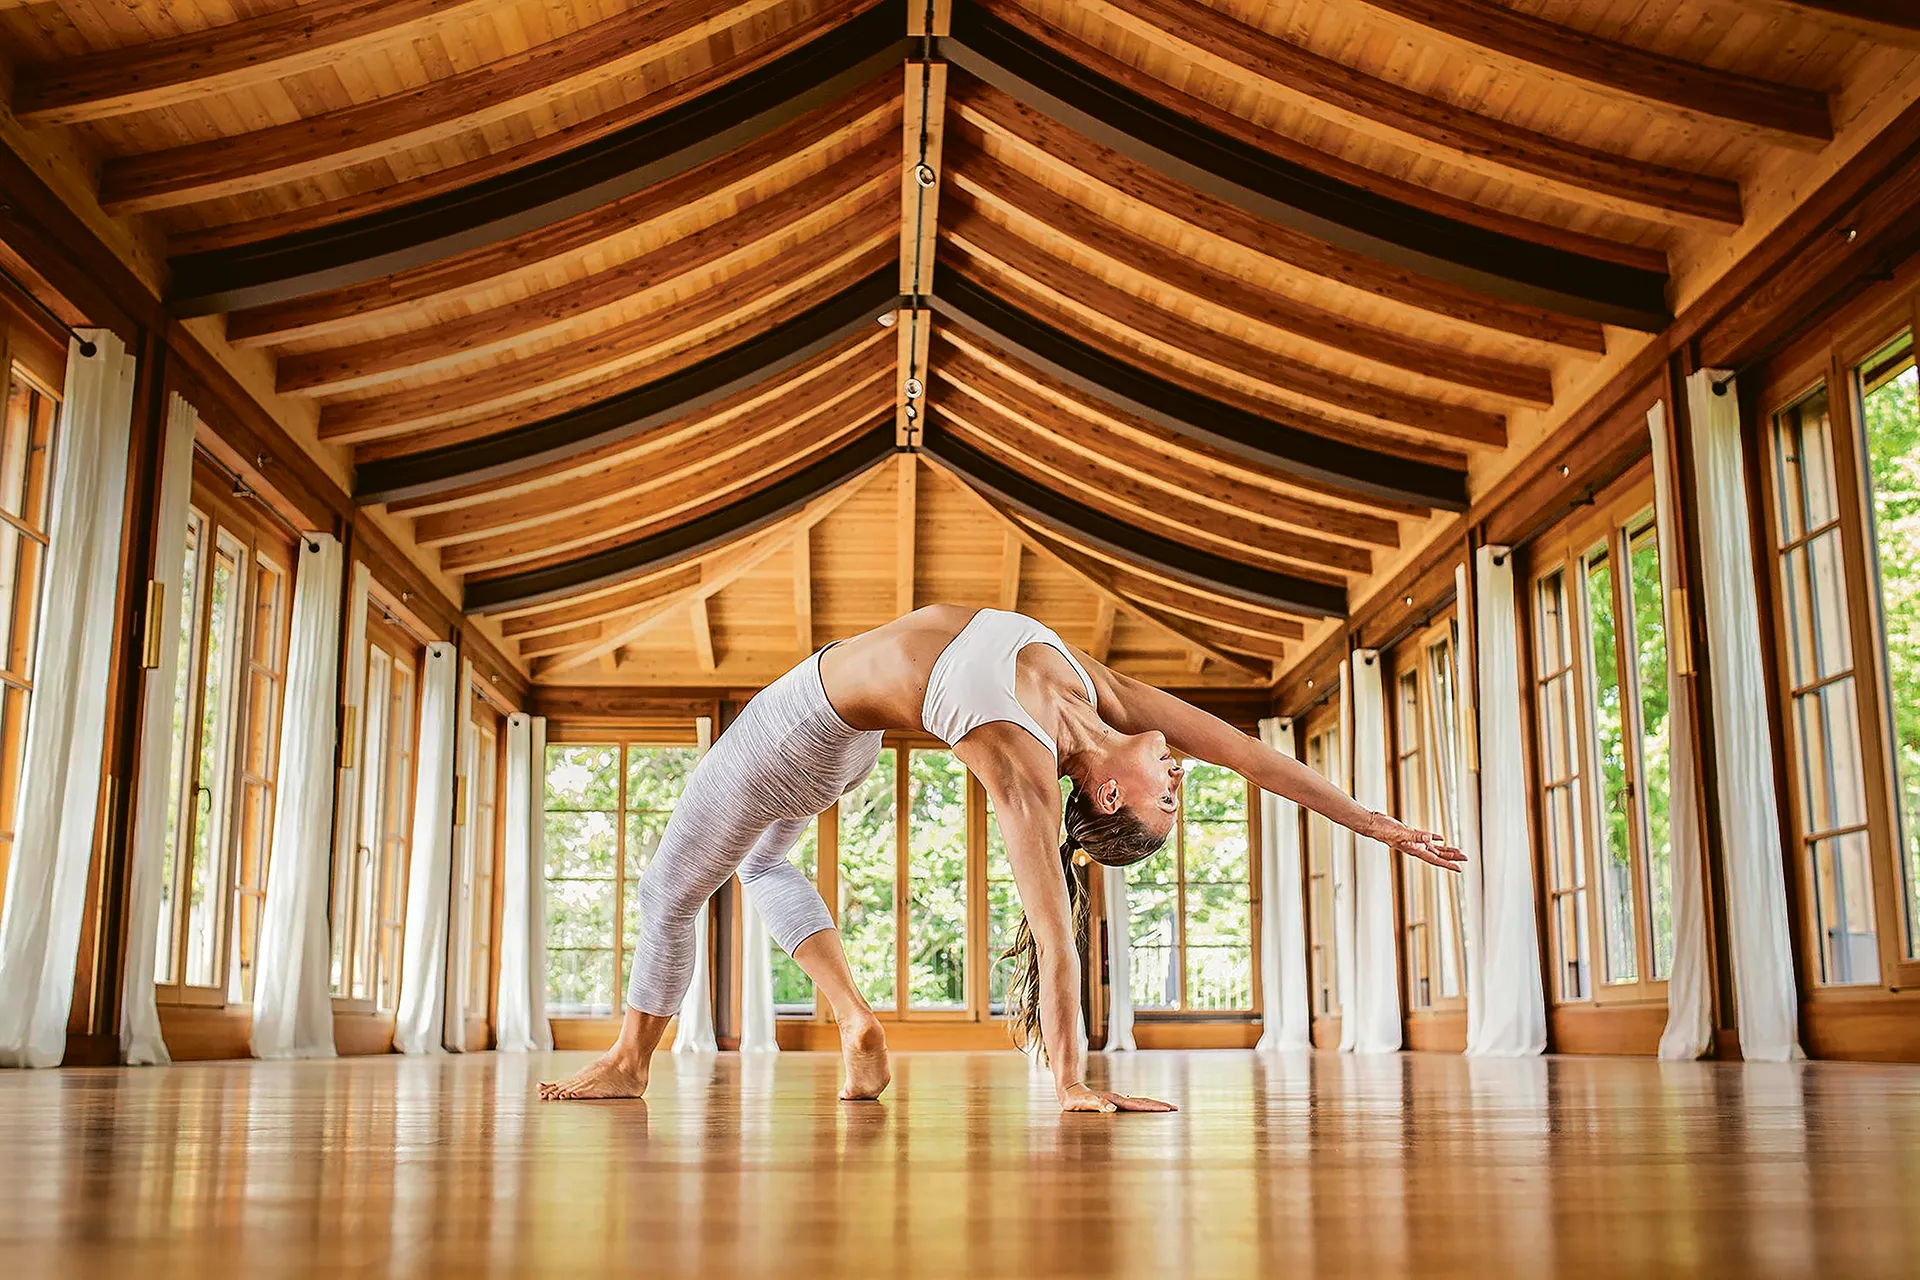 Frau macht Yoga Pose in großem Saal